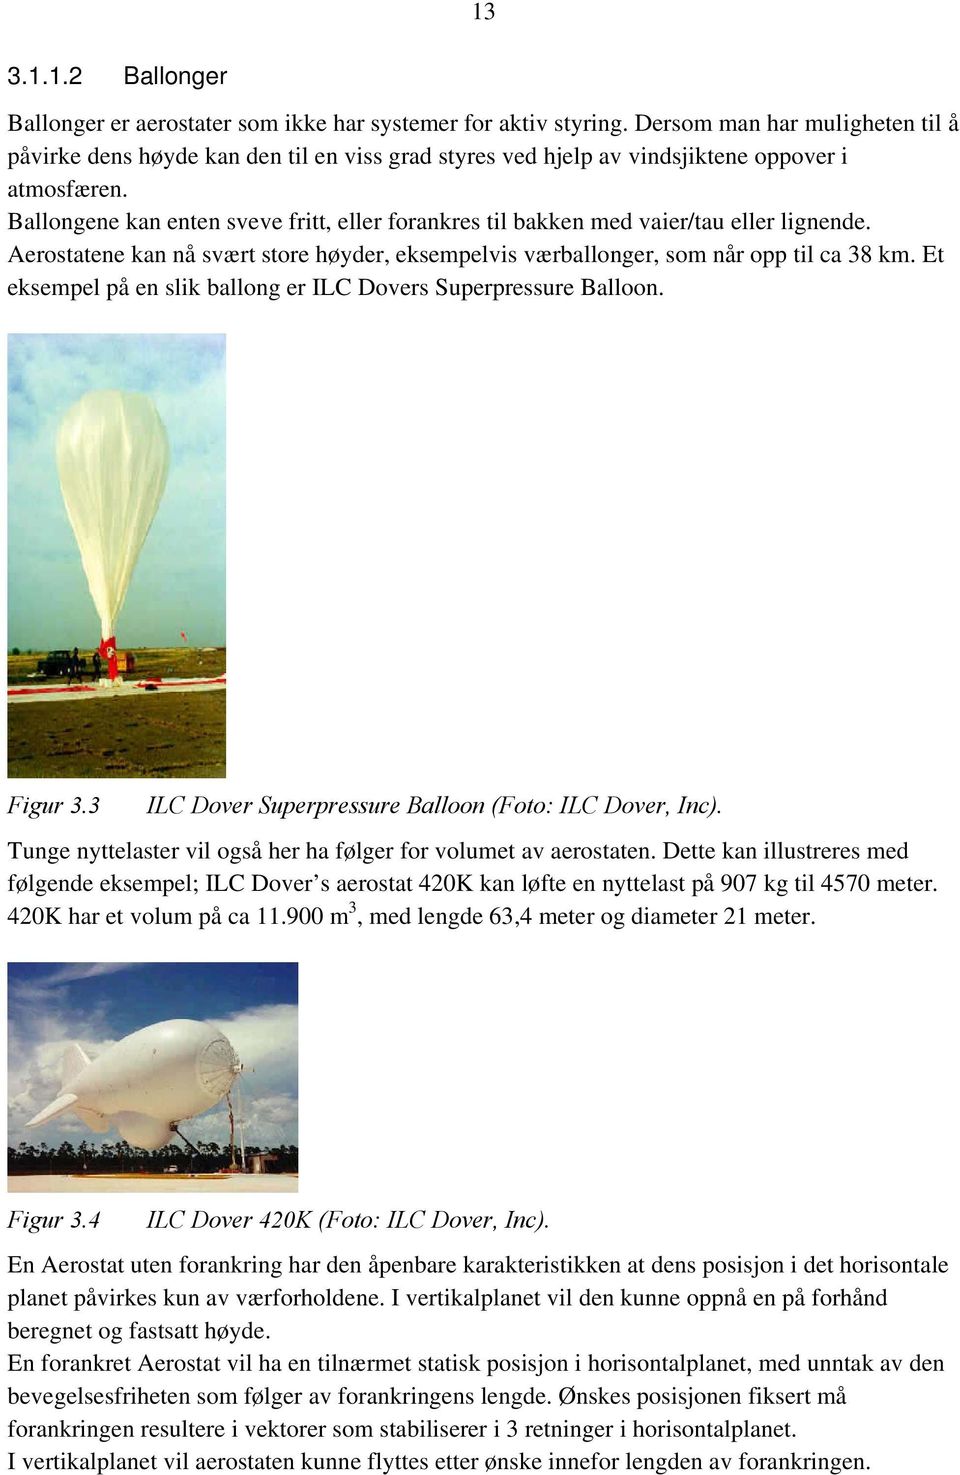 Ballongene kan enten sveve fritt, eller forankres til bakken med vaier/tau eller lignende. Aerostatene kan nå svært store høyder, eksempelvis værballonger, som når opp til ca 38 km.